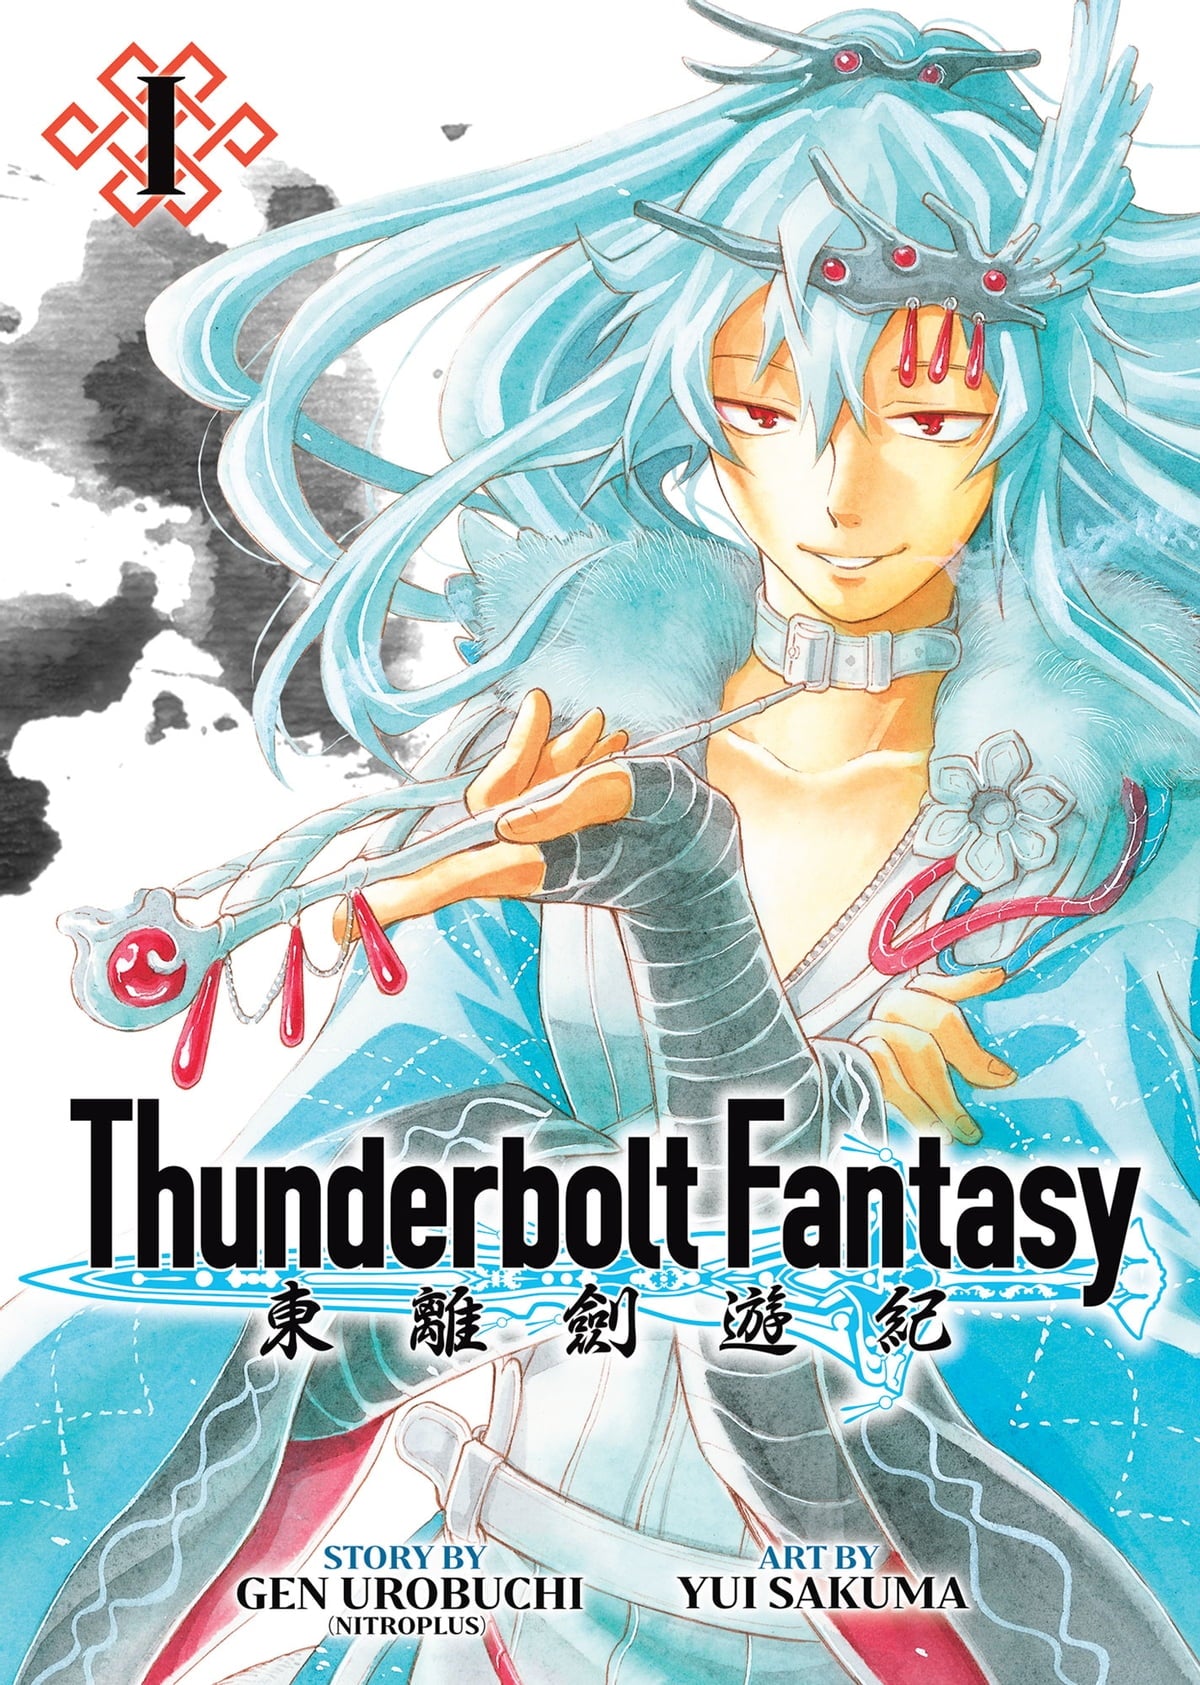 Thunderbolt Fantasy Omnibus 01 (Vol. 01-02)